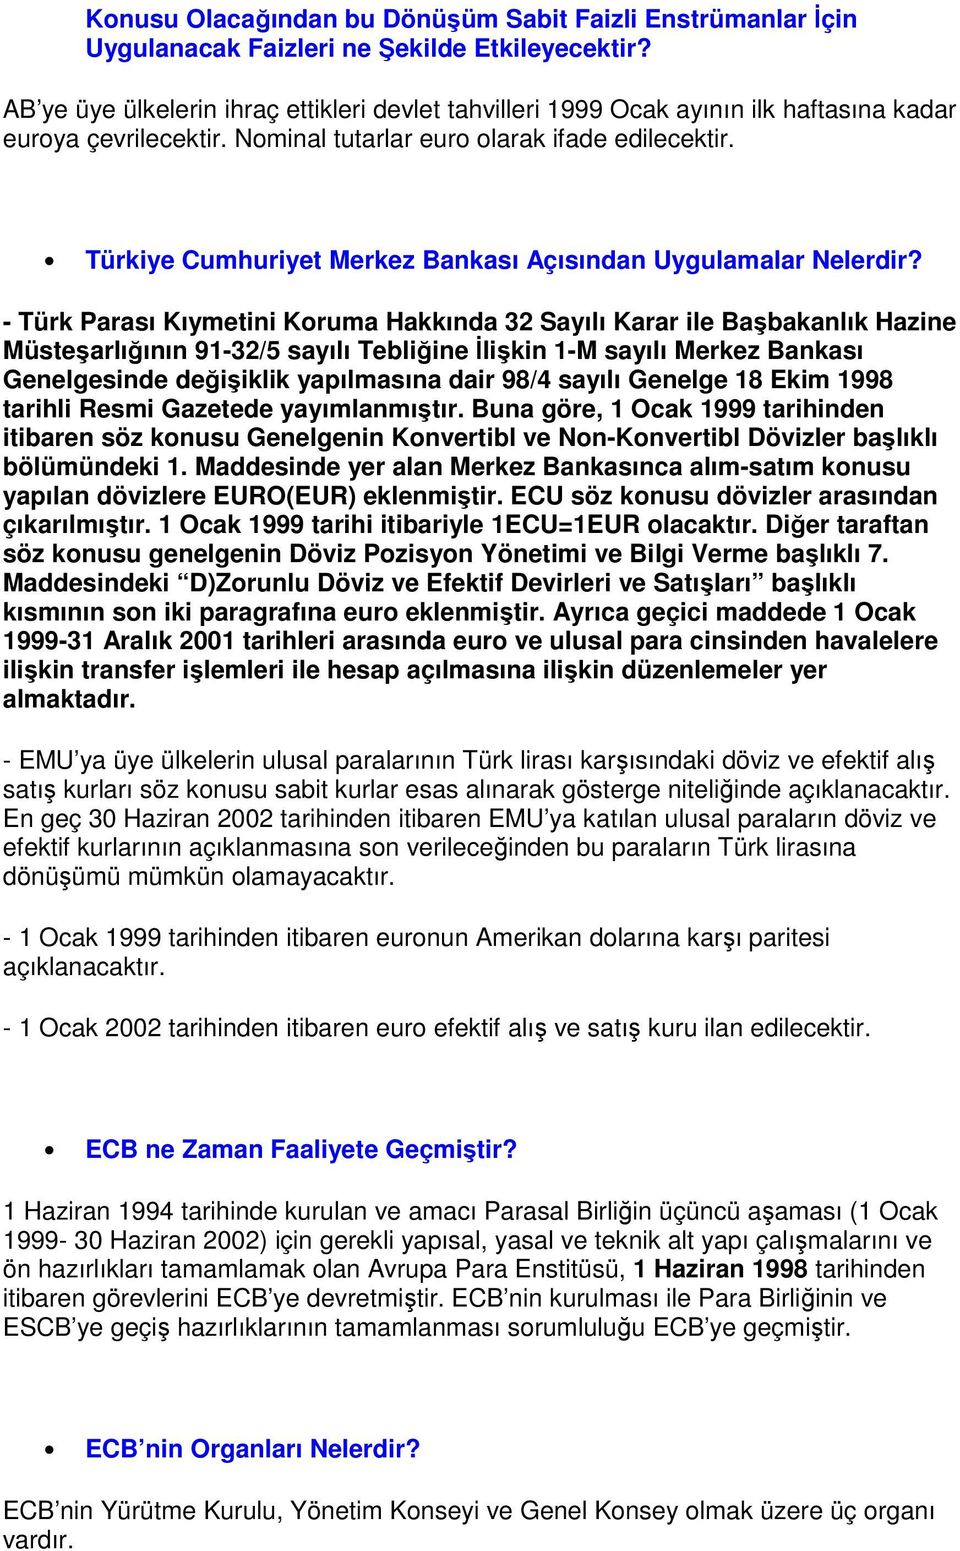 Türkiye Cumhuriyet Merkez Bankası Açısından Uygulamalar Nelerdir?